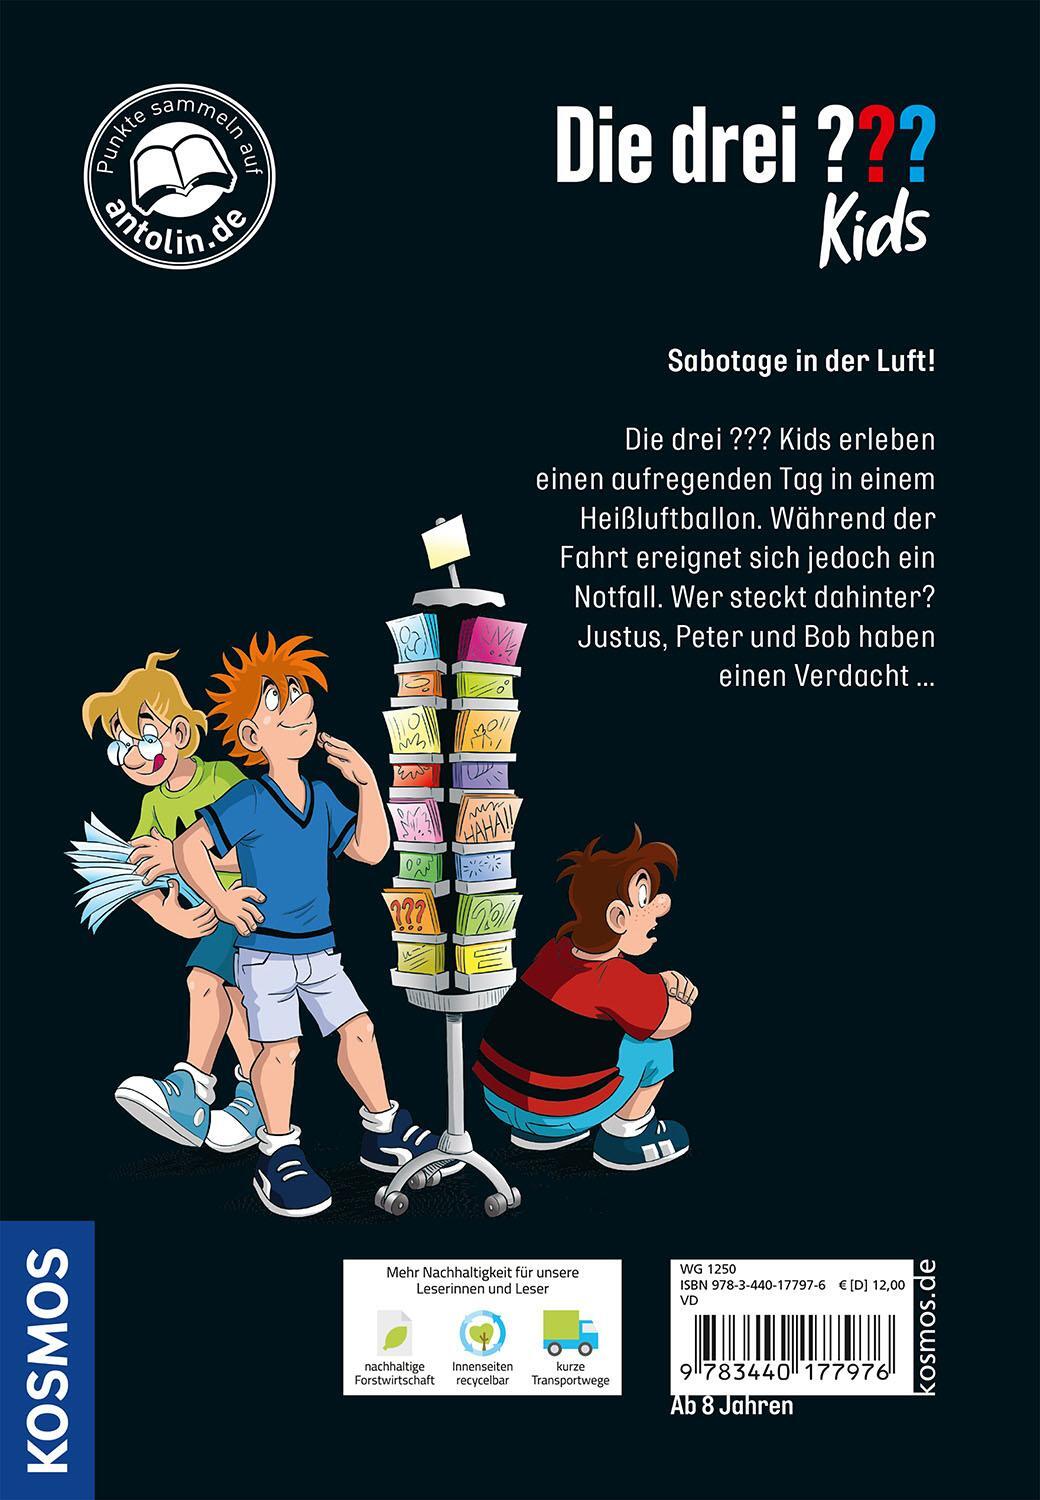 Bild: 9783440177976 | Die drei ??? Kids, 9, SOS über den Wolken | Ulf Blanck | Buch | 128 S.